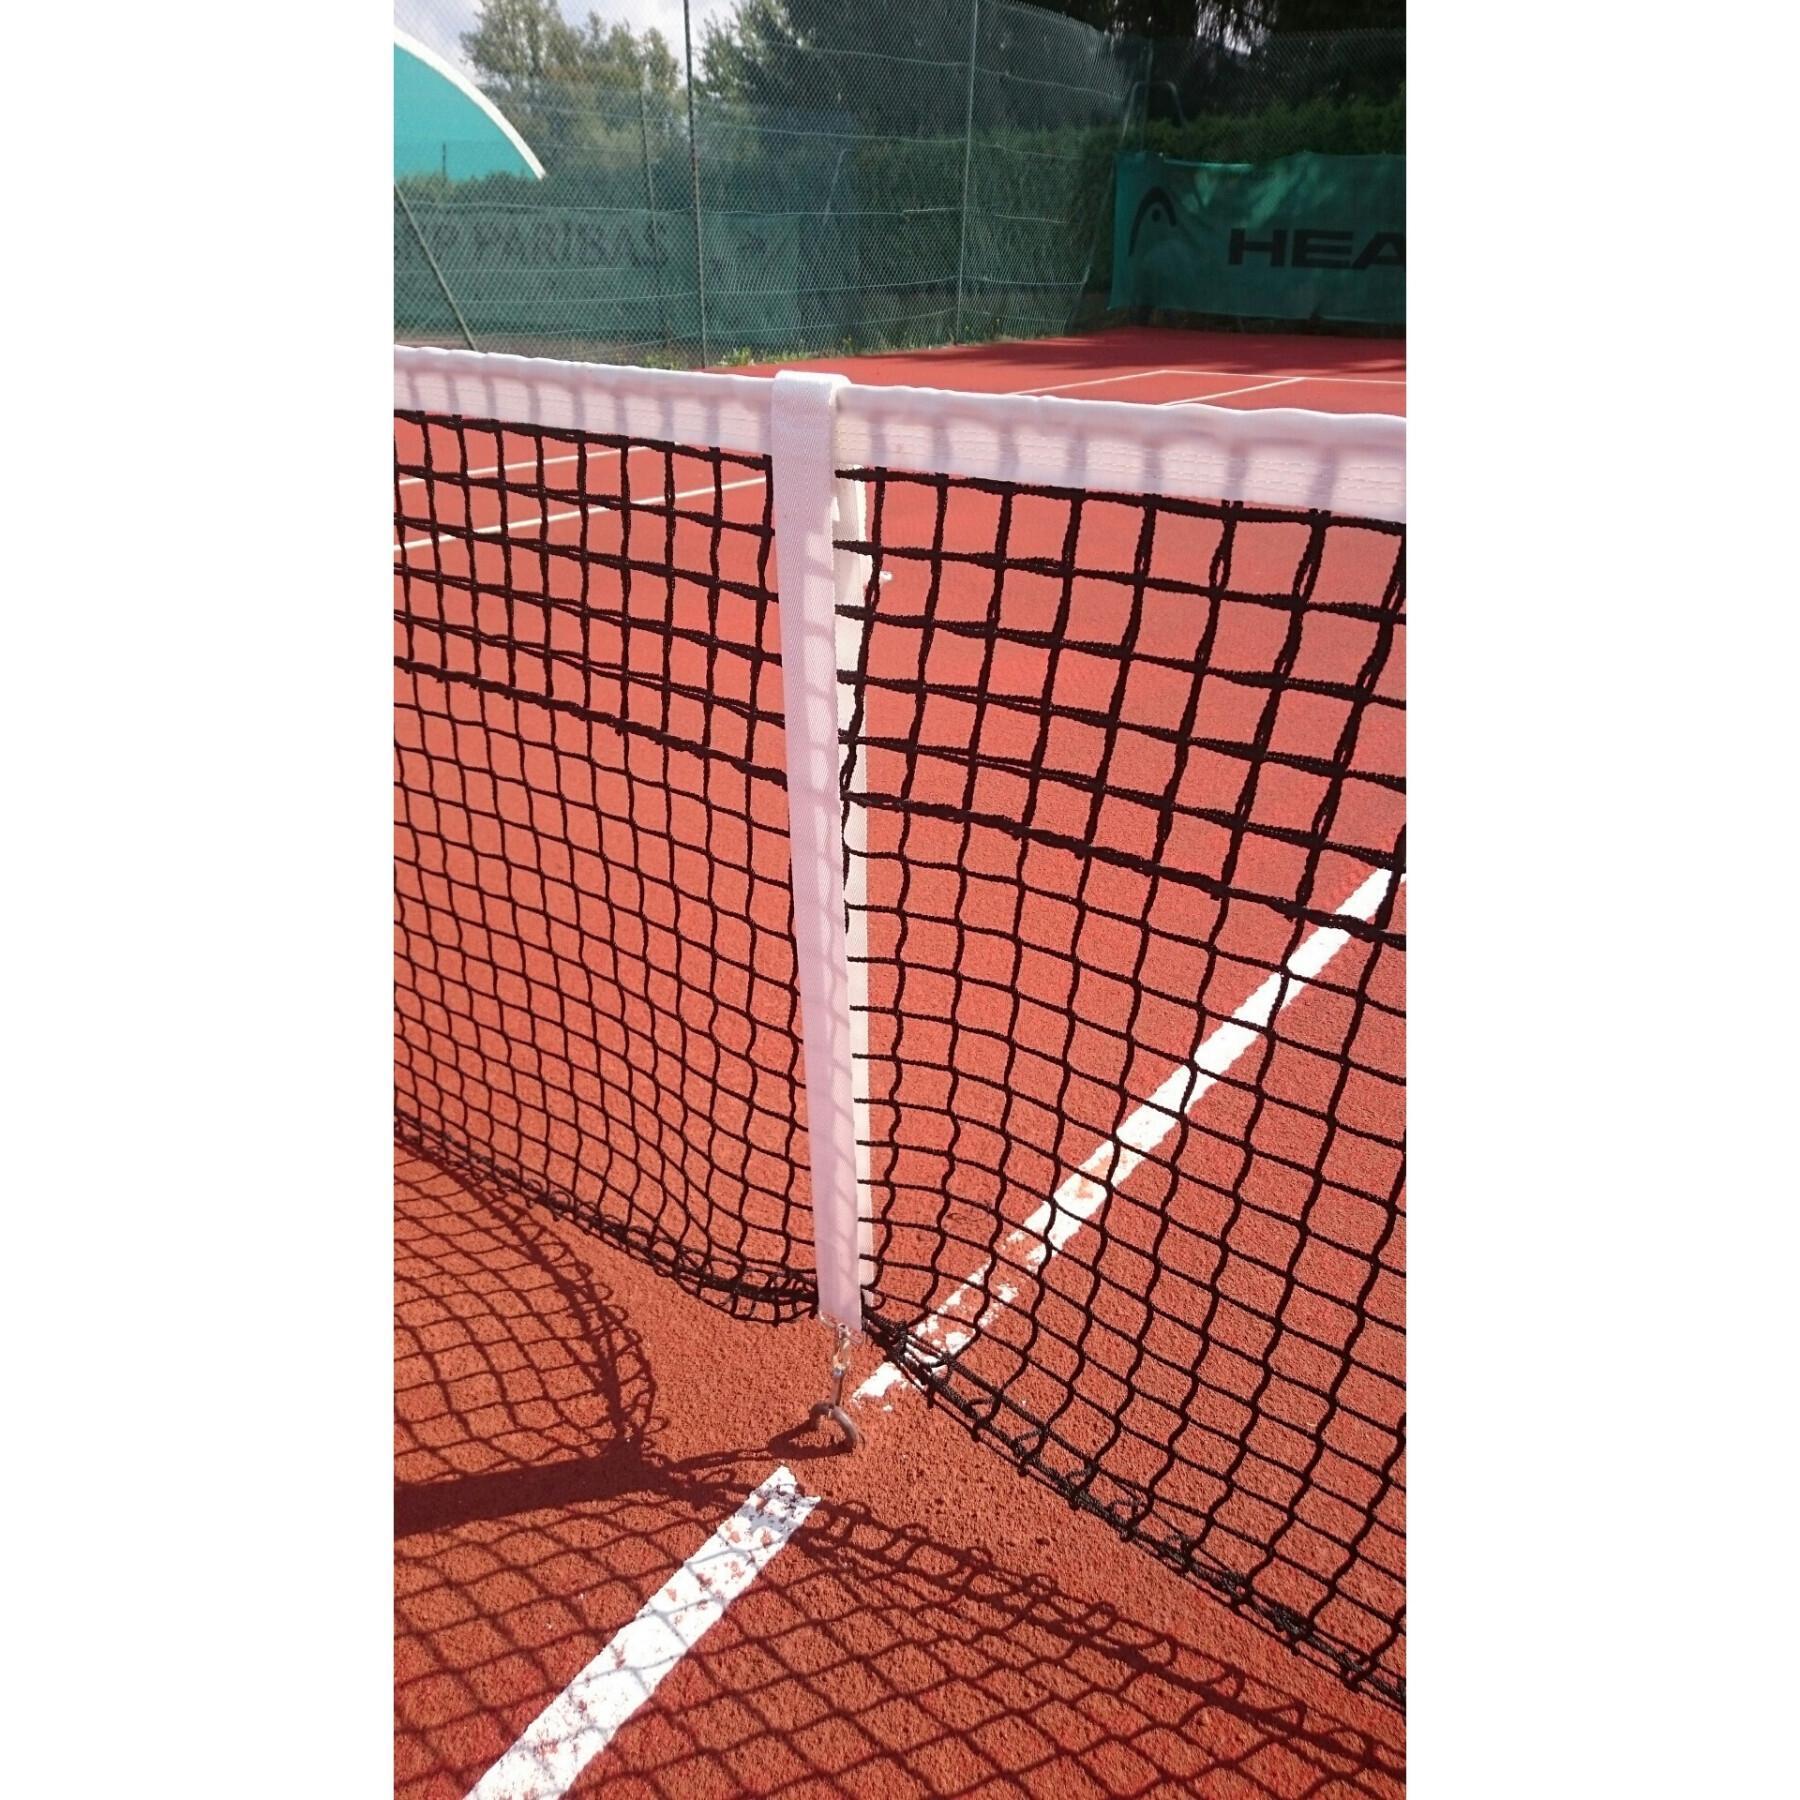 Regulador de red de tenis con velcro Carrington